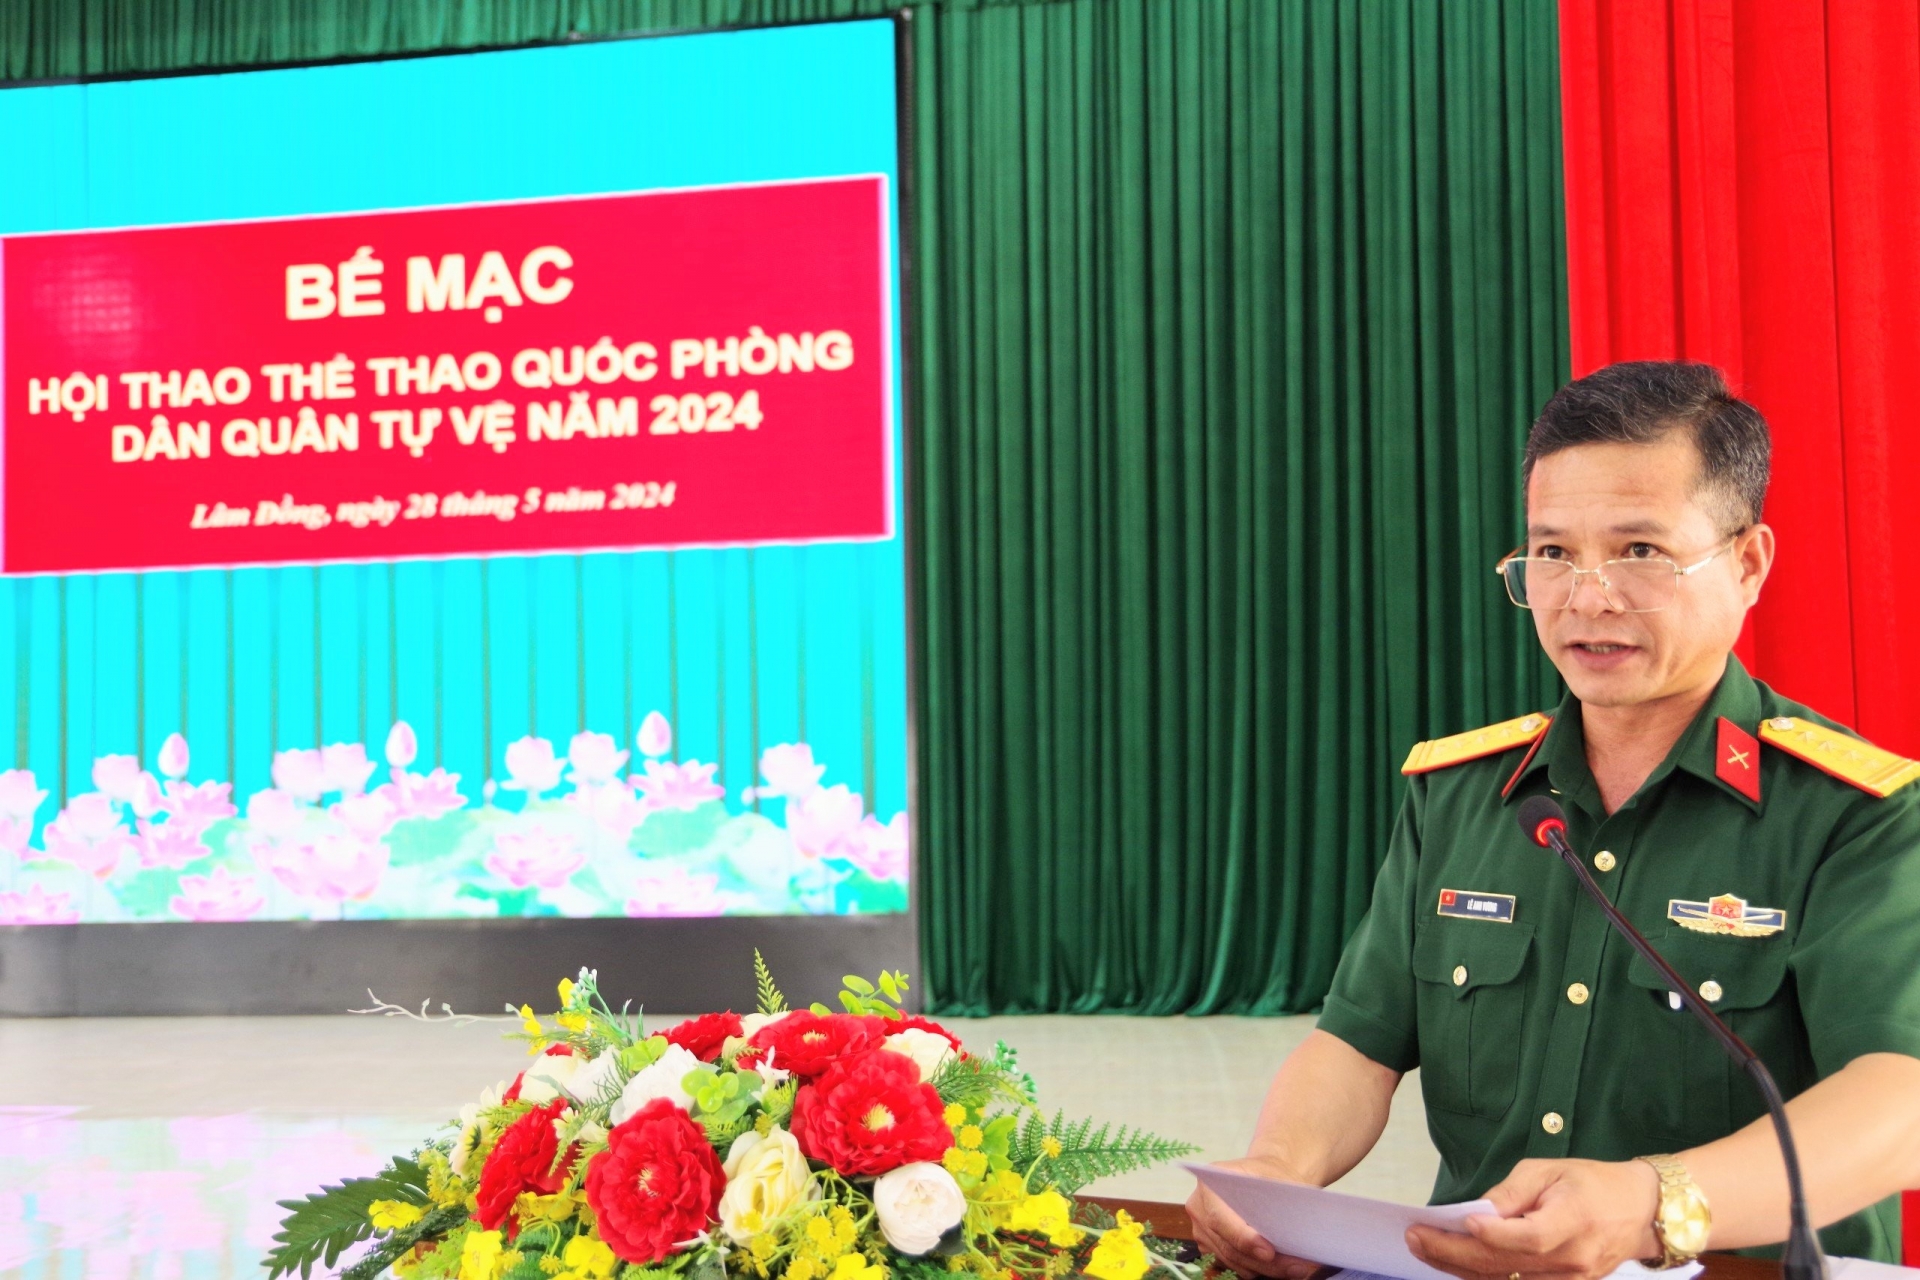 Đại tá Lê Anh Vương - Phó Chỉ huy trưởng Bộ CHQS tỉnh phát biểu bế mạc hội thao 